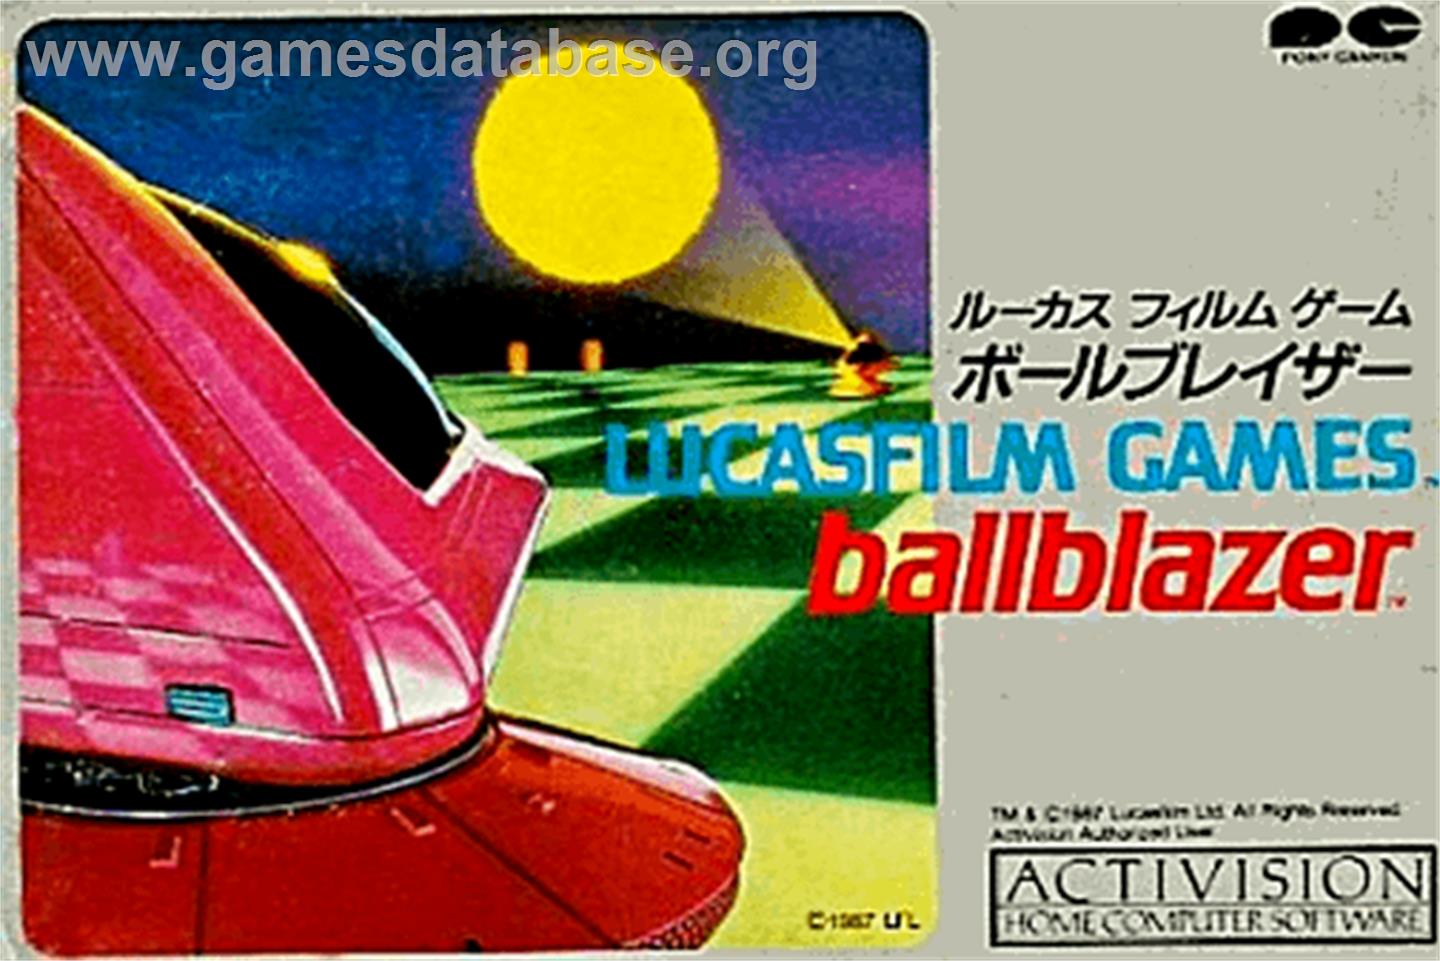 Ballblazer - Nintendo NES - Artwork - Box